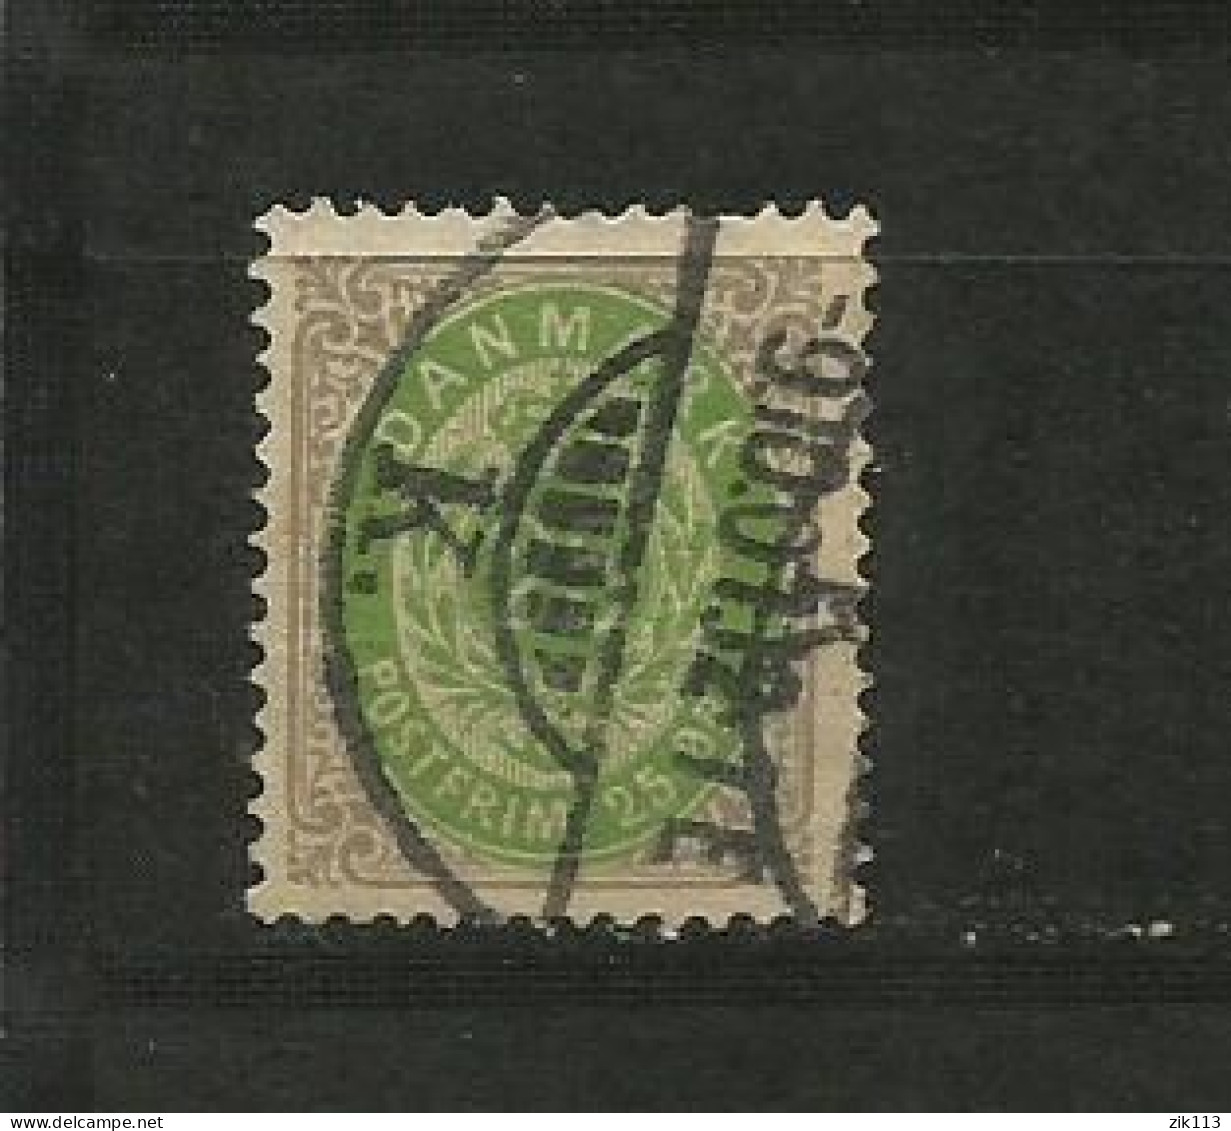 DENMARK  1875 - MI. 29, USED - Oblitérés